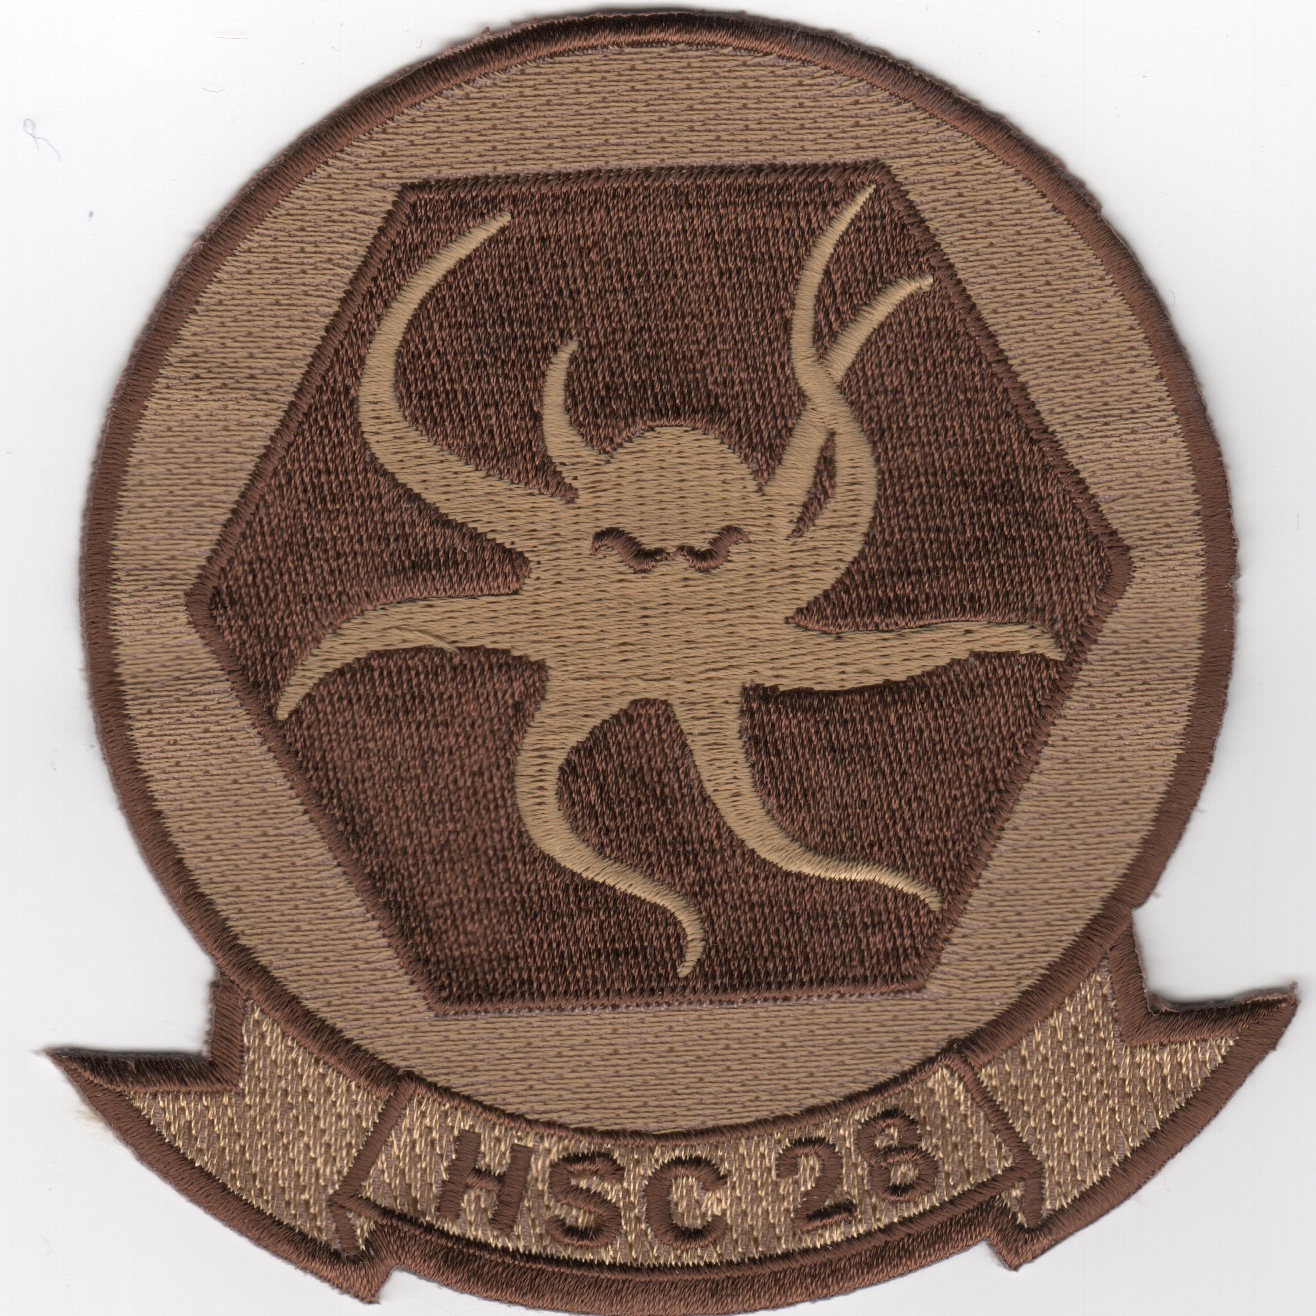 HSC-28 Squadron (Des)